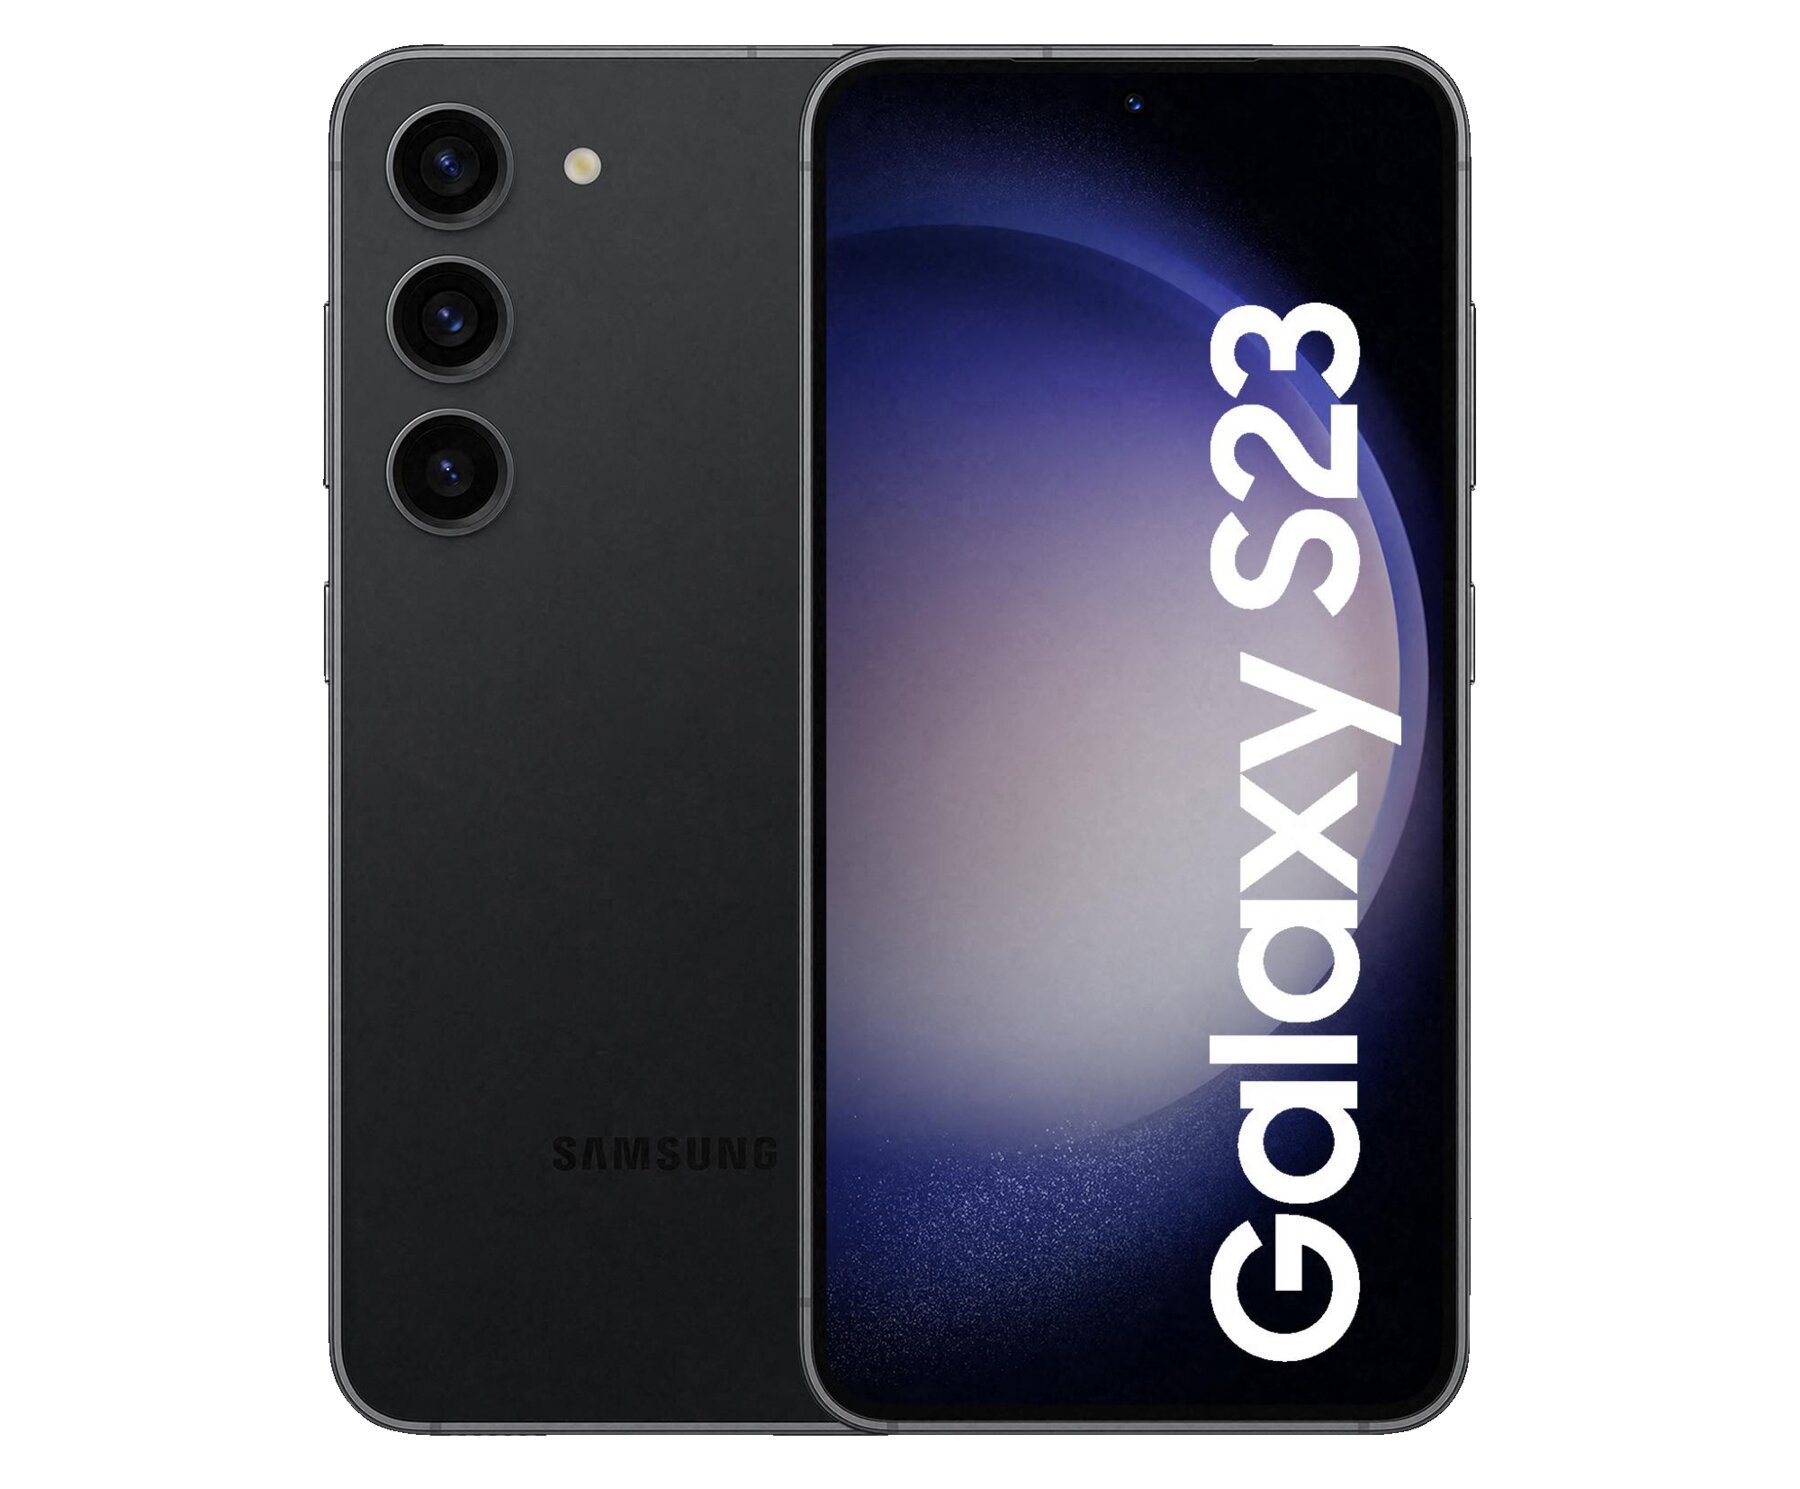 Deal: Samsung Galaxy zum bei Markt dank Direktabzug und Eintauschbonus für uralt - Notebookcheck.com News